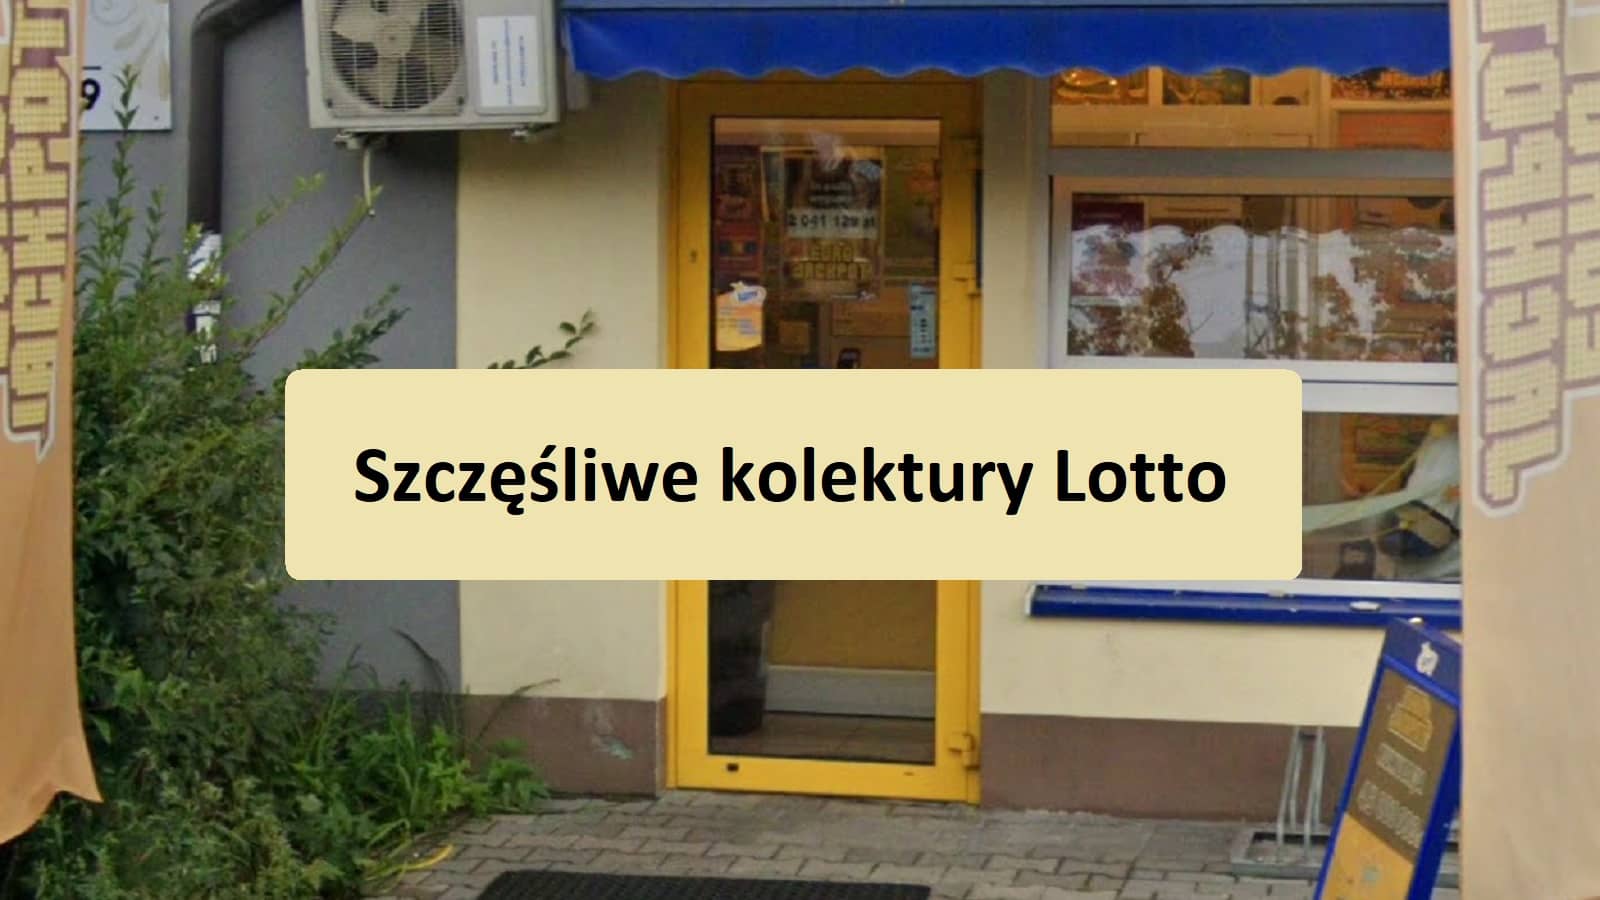 napis na tle jednej z warszawski kolektur Lotto